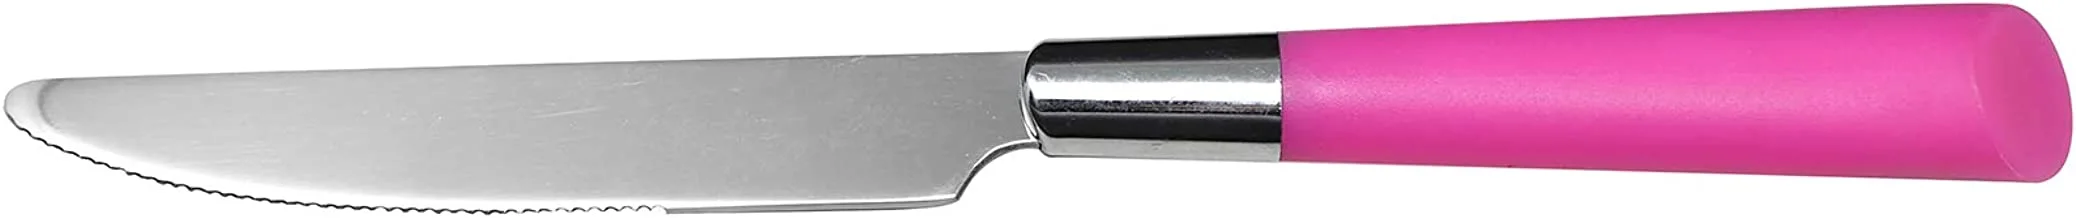 طقم سكاكين سفرة من رويال فورد - 3 قطع ، متعدد الالوان ، ستانلس ستيل